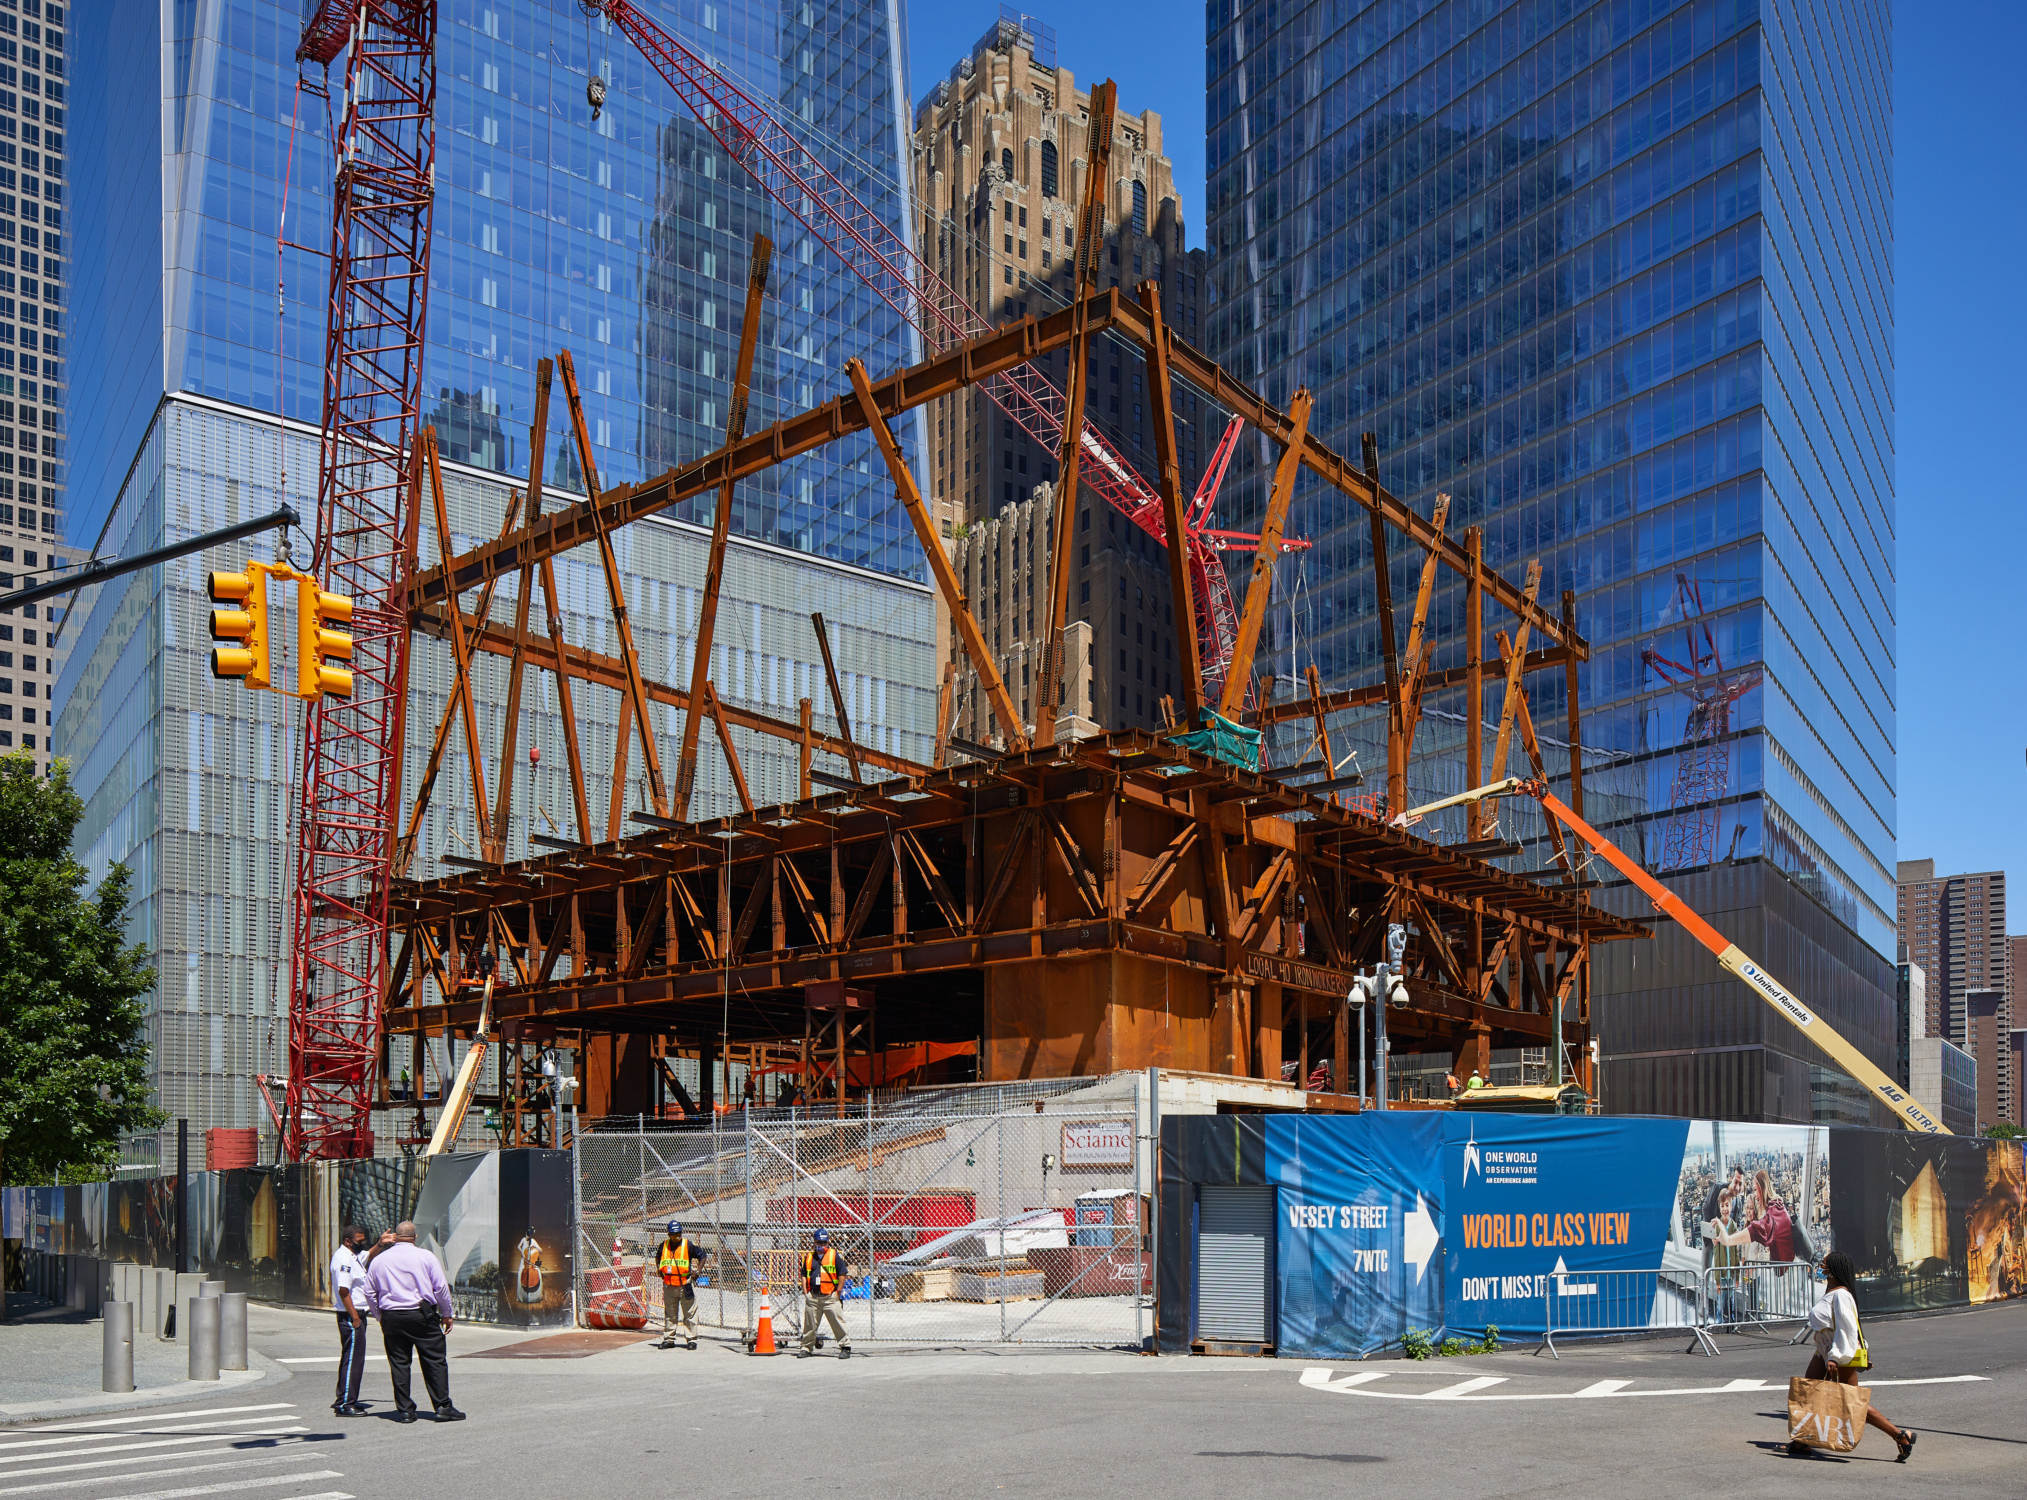 A photograph of The Perelman Center under construction.